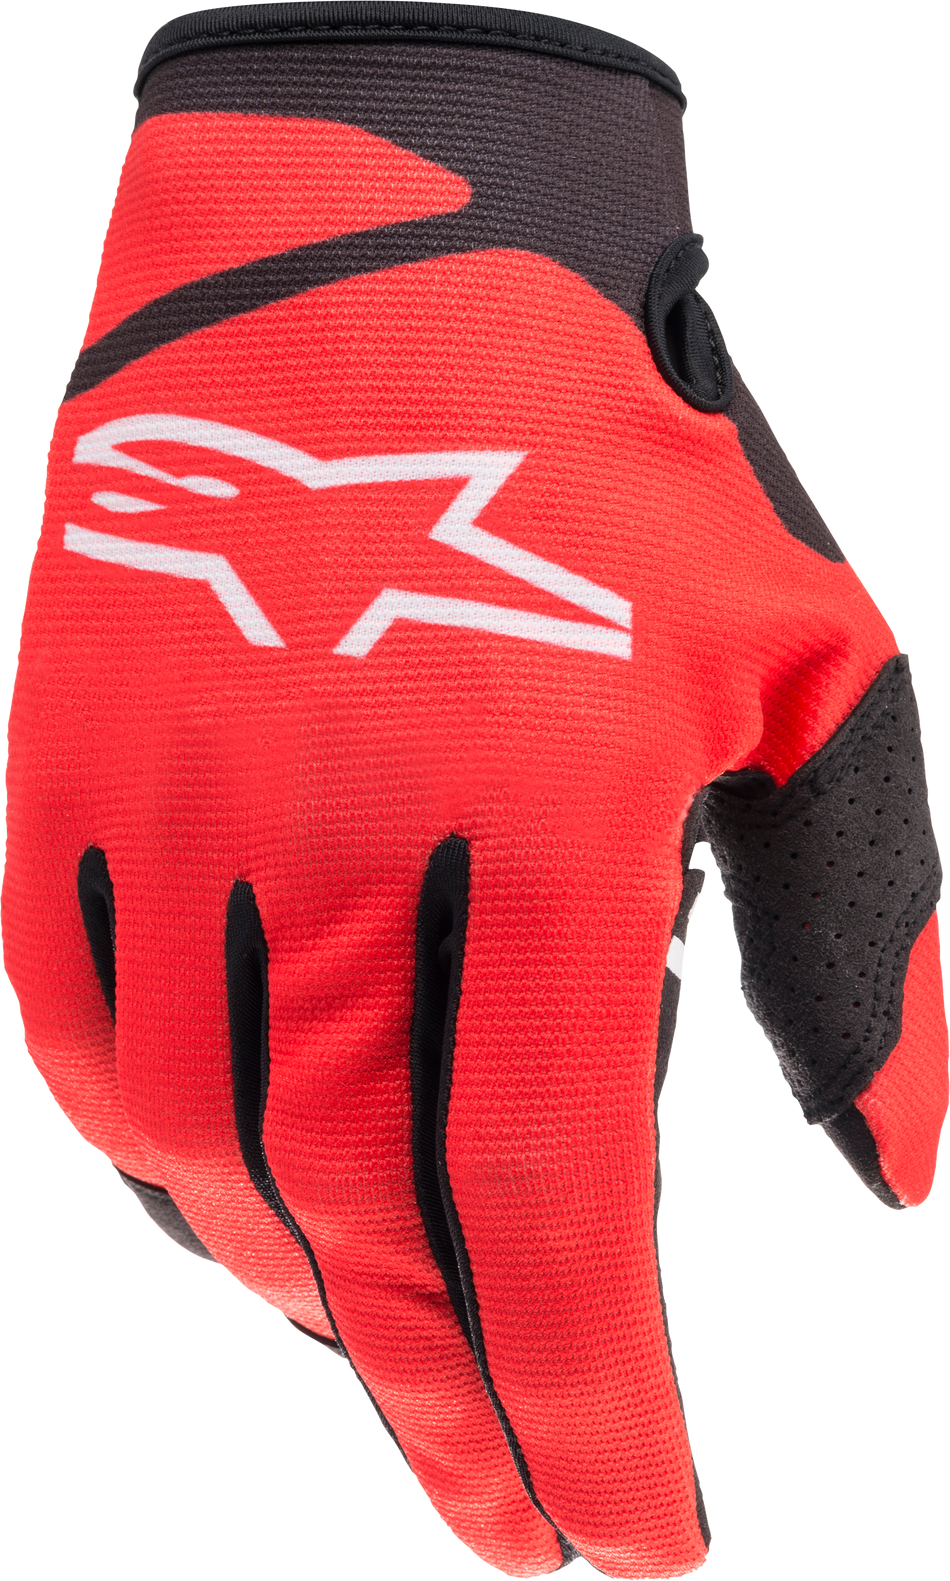 ALPINESTARS Youth Radar Gloves Bright Red/Black Sm 3541822-3031-S